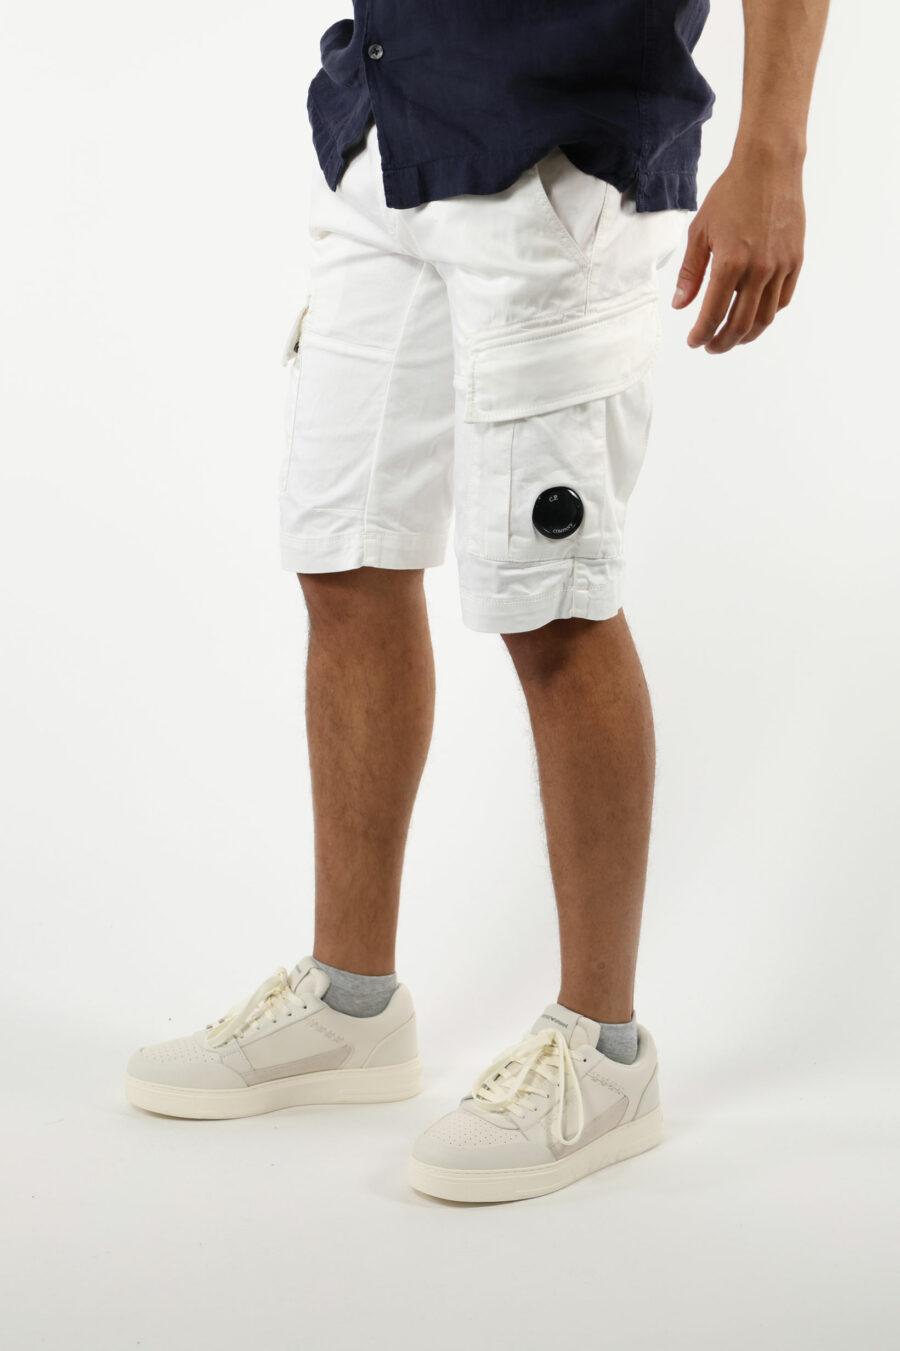 Pantalón corto blanco estilo cargo con minilogo lente - 111326